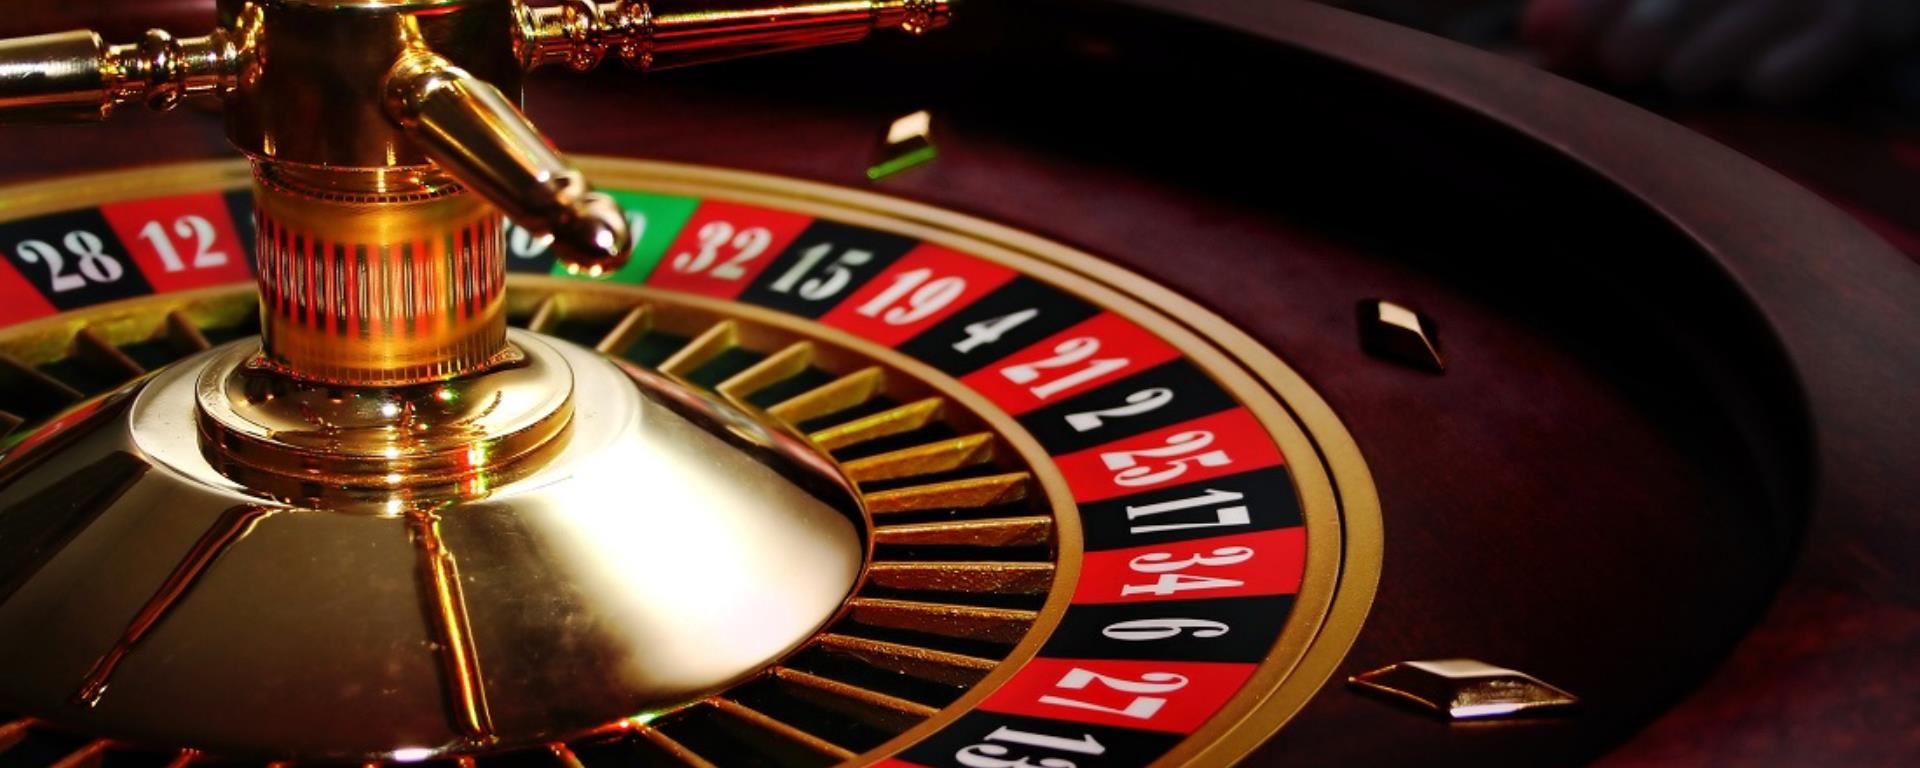 2015- casino roulette nc